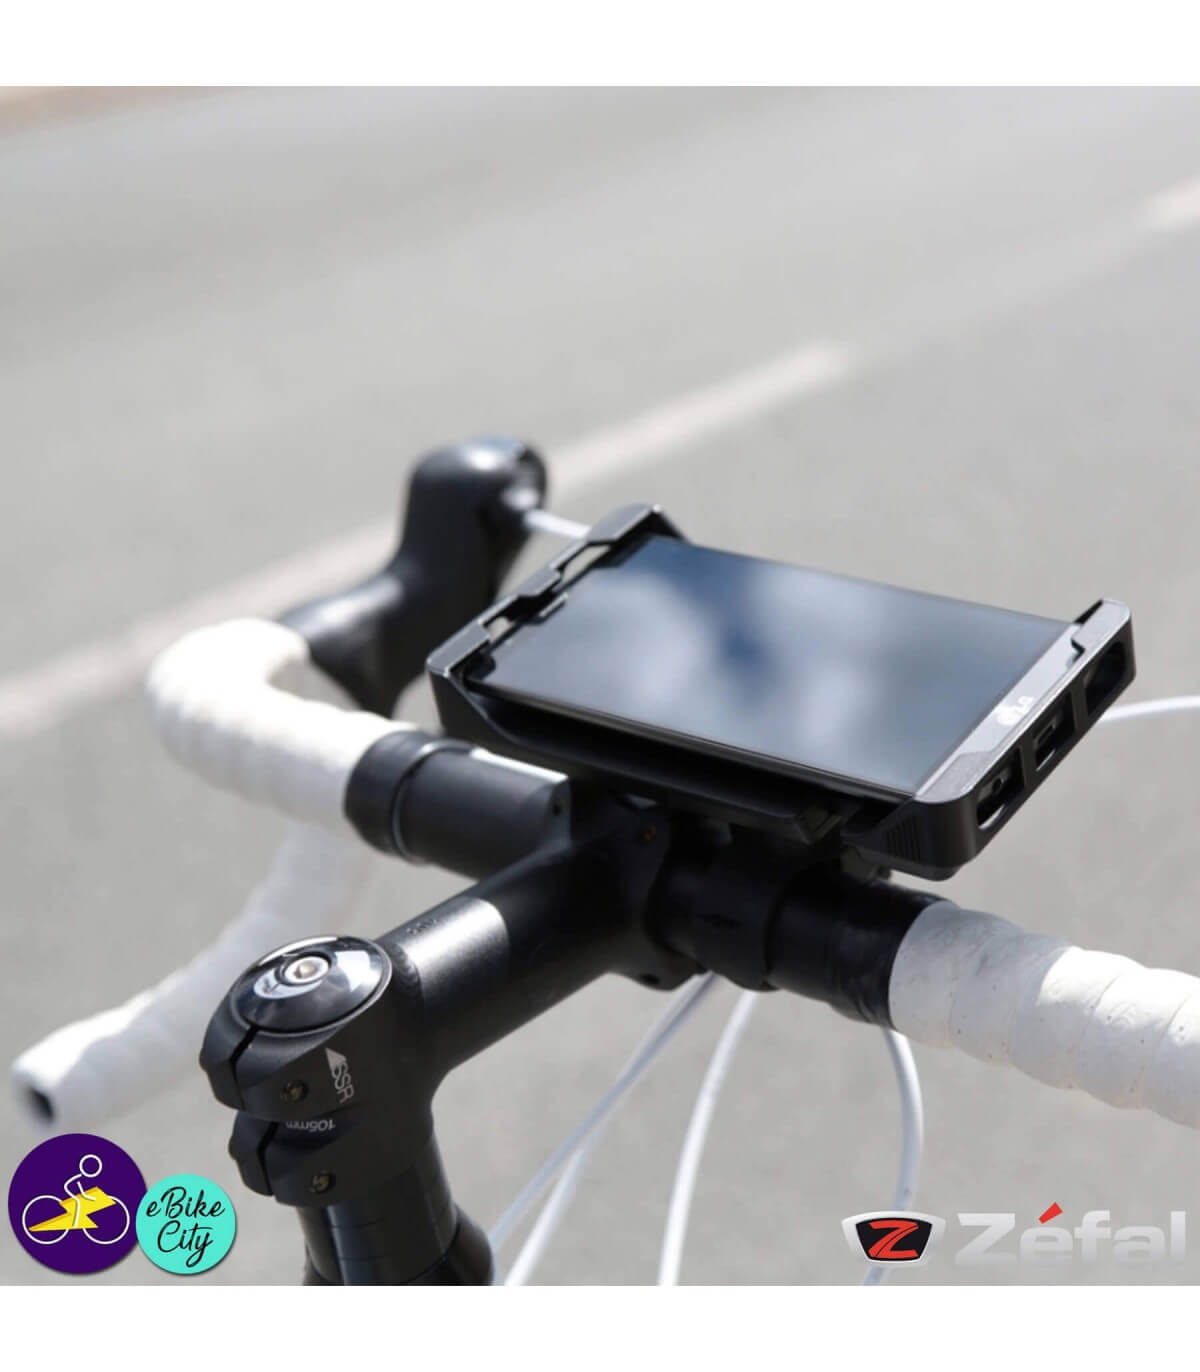 Support professionnel pour smartphone LE TOUR, Vélo